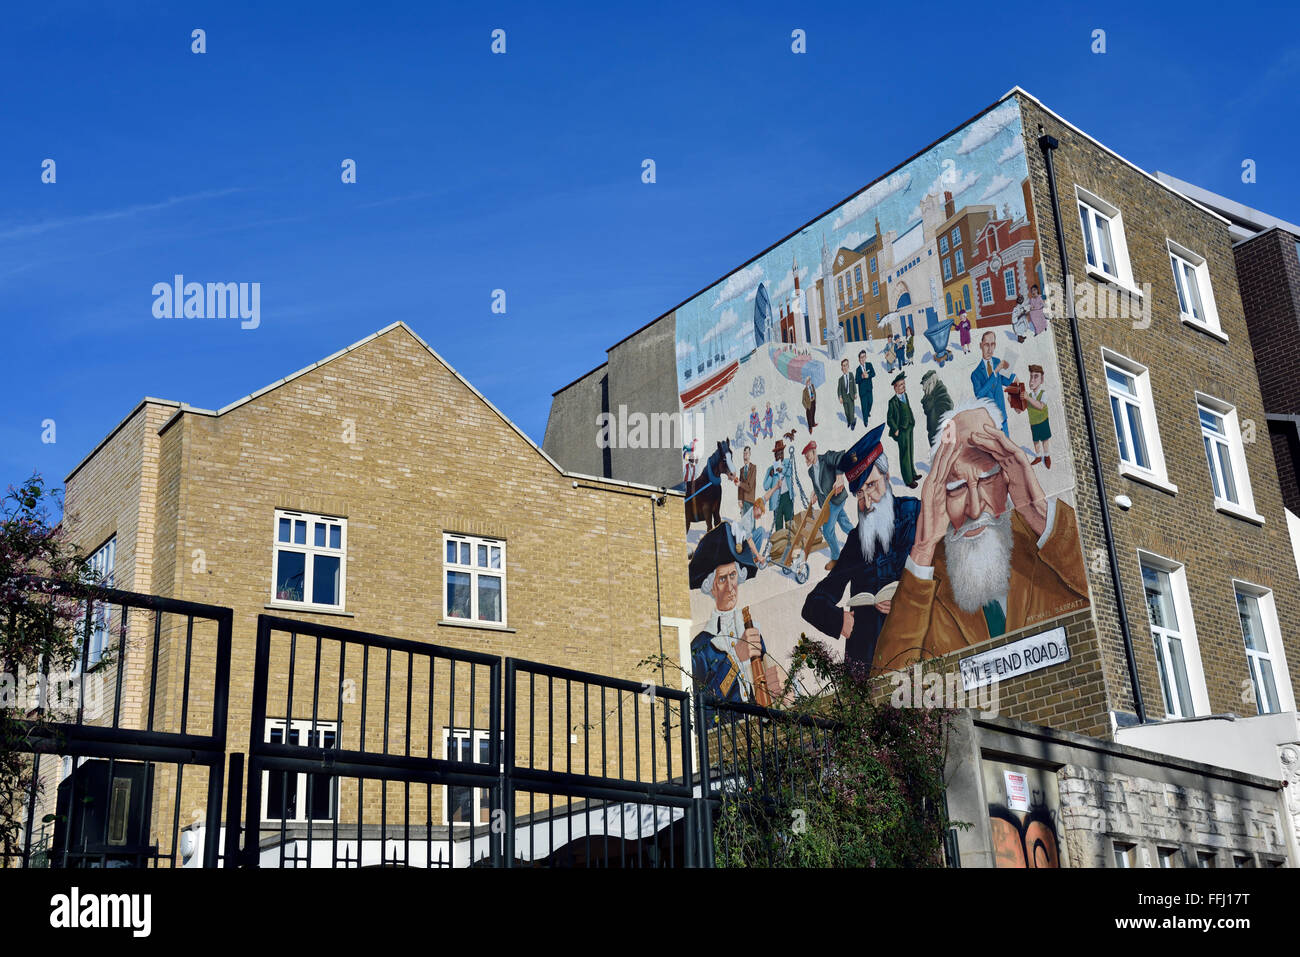 Bâtiments à Mile End avec fresque de Mychael Barratt, Mile End Road Londres Borough of Tower Hamlets Angleterre Royaume-Uni. Éditorial uniquement Banque D'Images